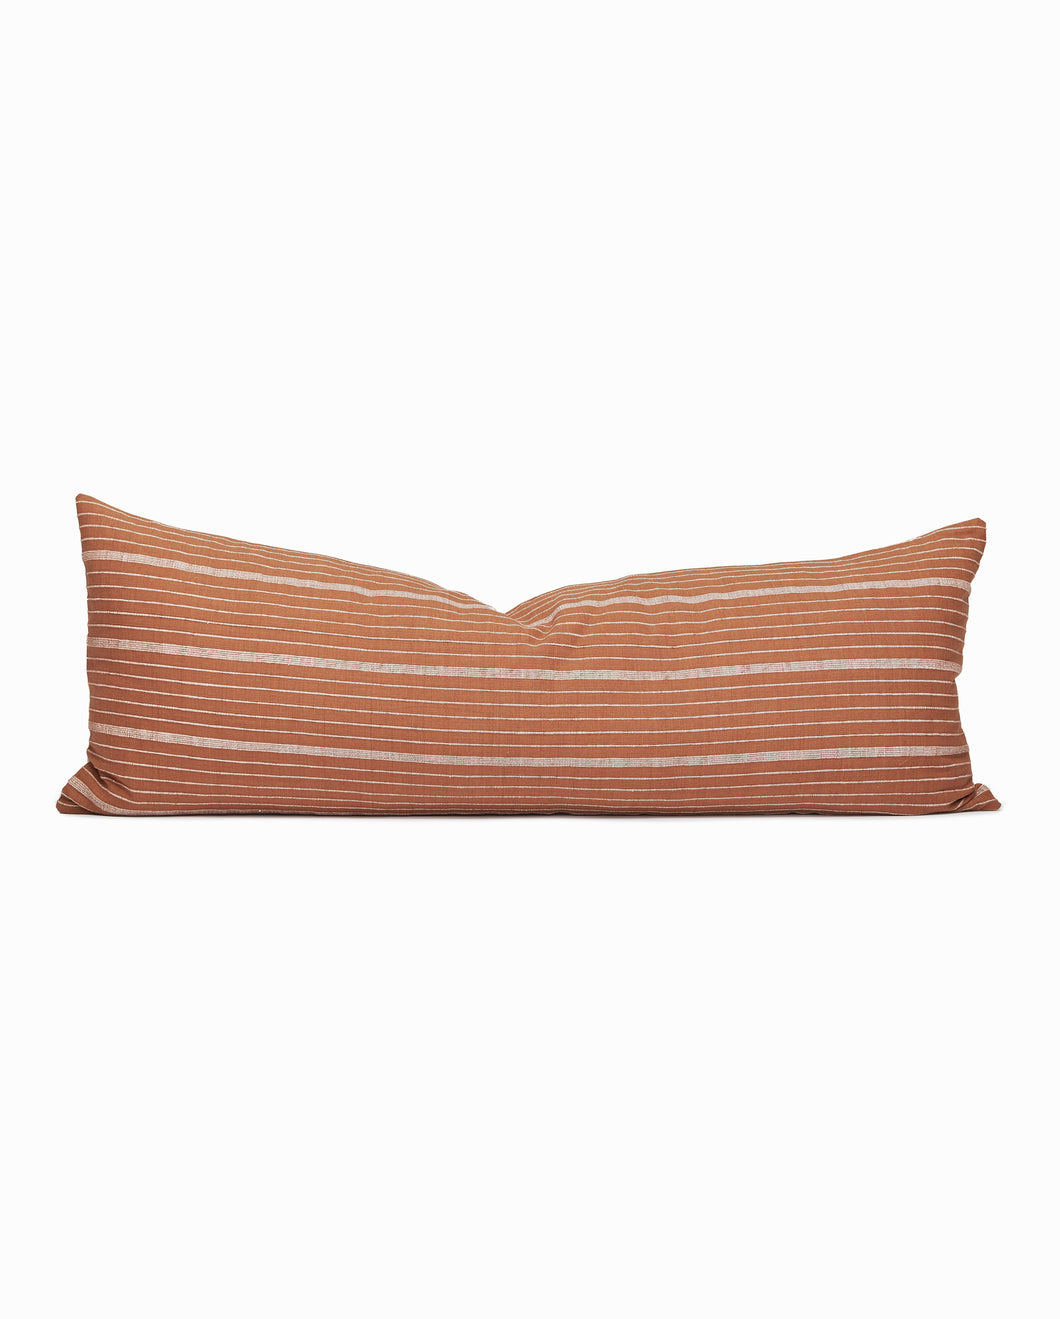 Terracotta long lumbar pillow. Terracotta linen pillow. Long lumbar pillow. Terracotta 14x36 lumbar pillow.